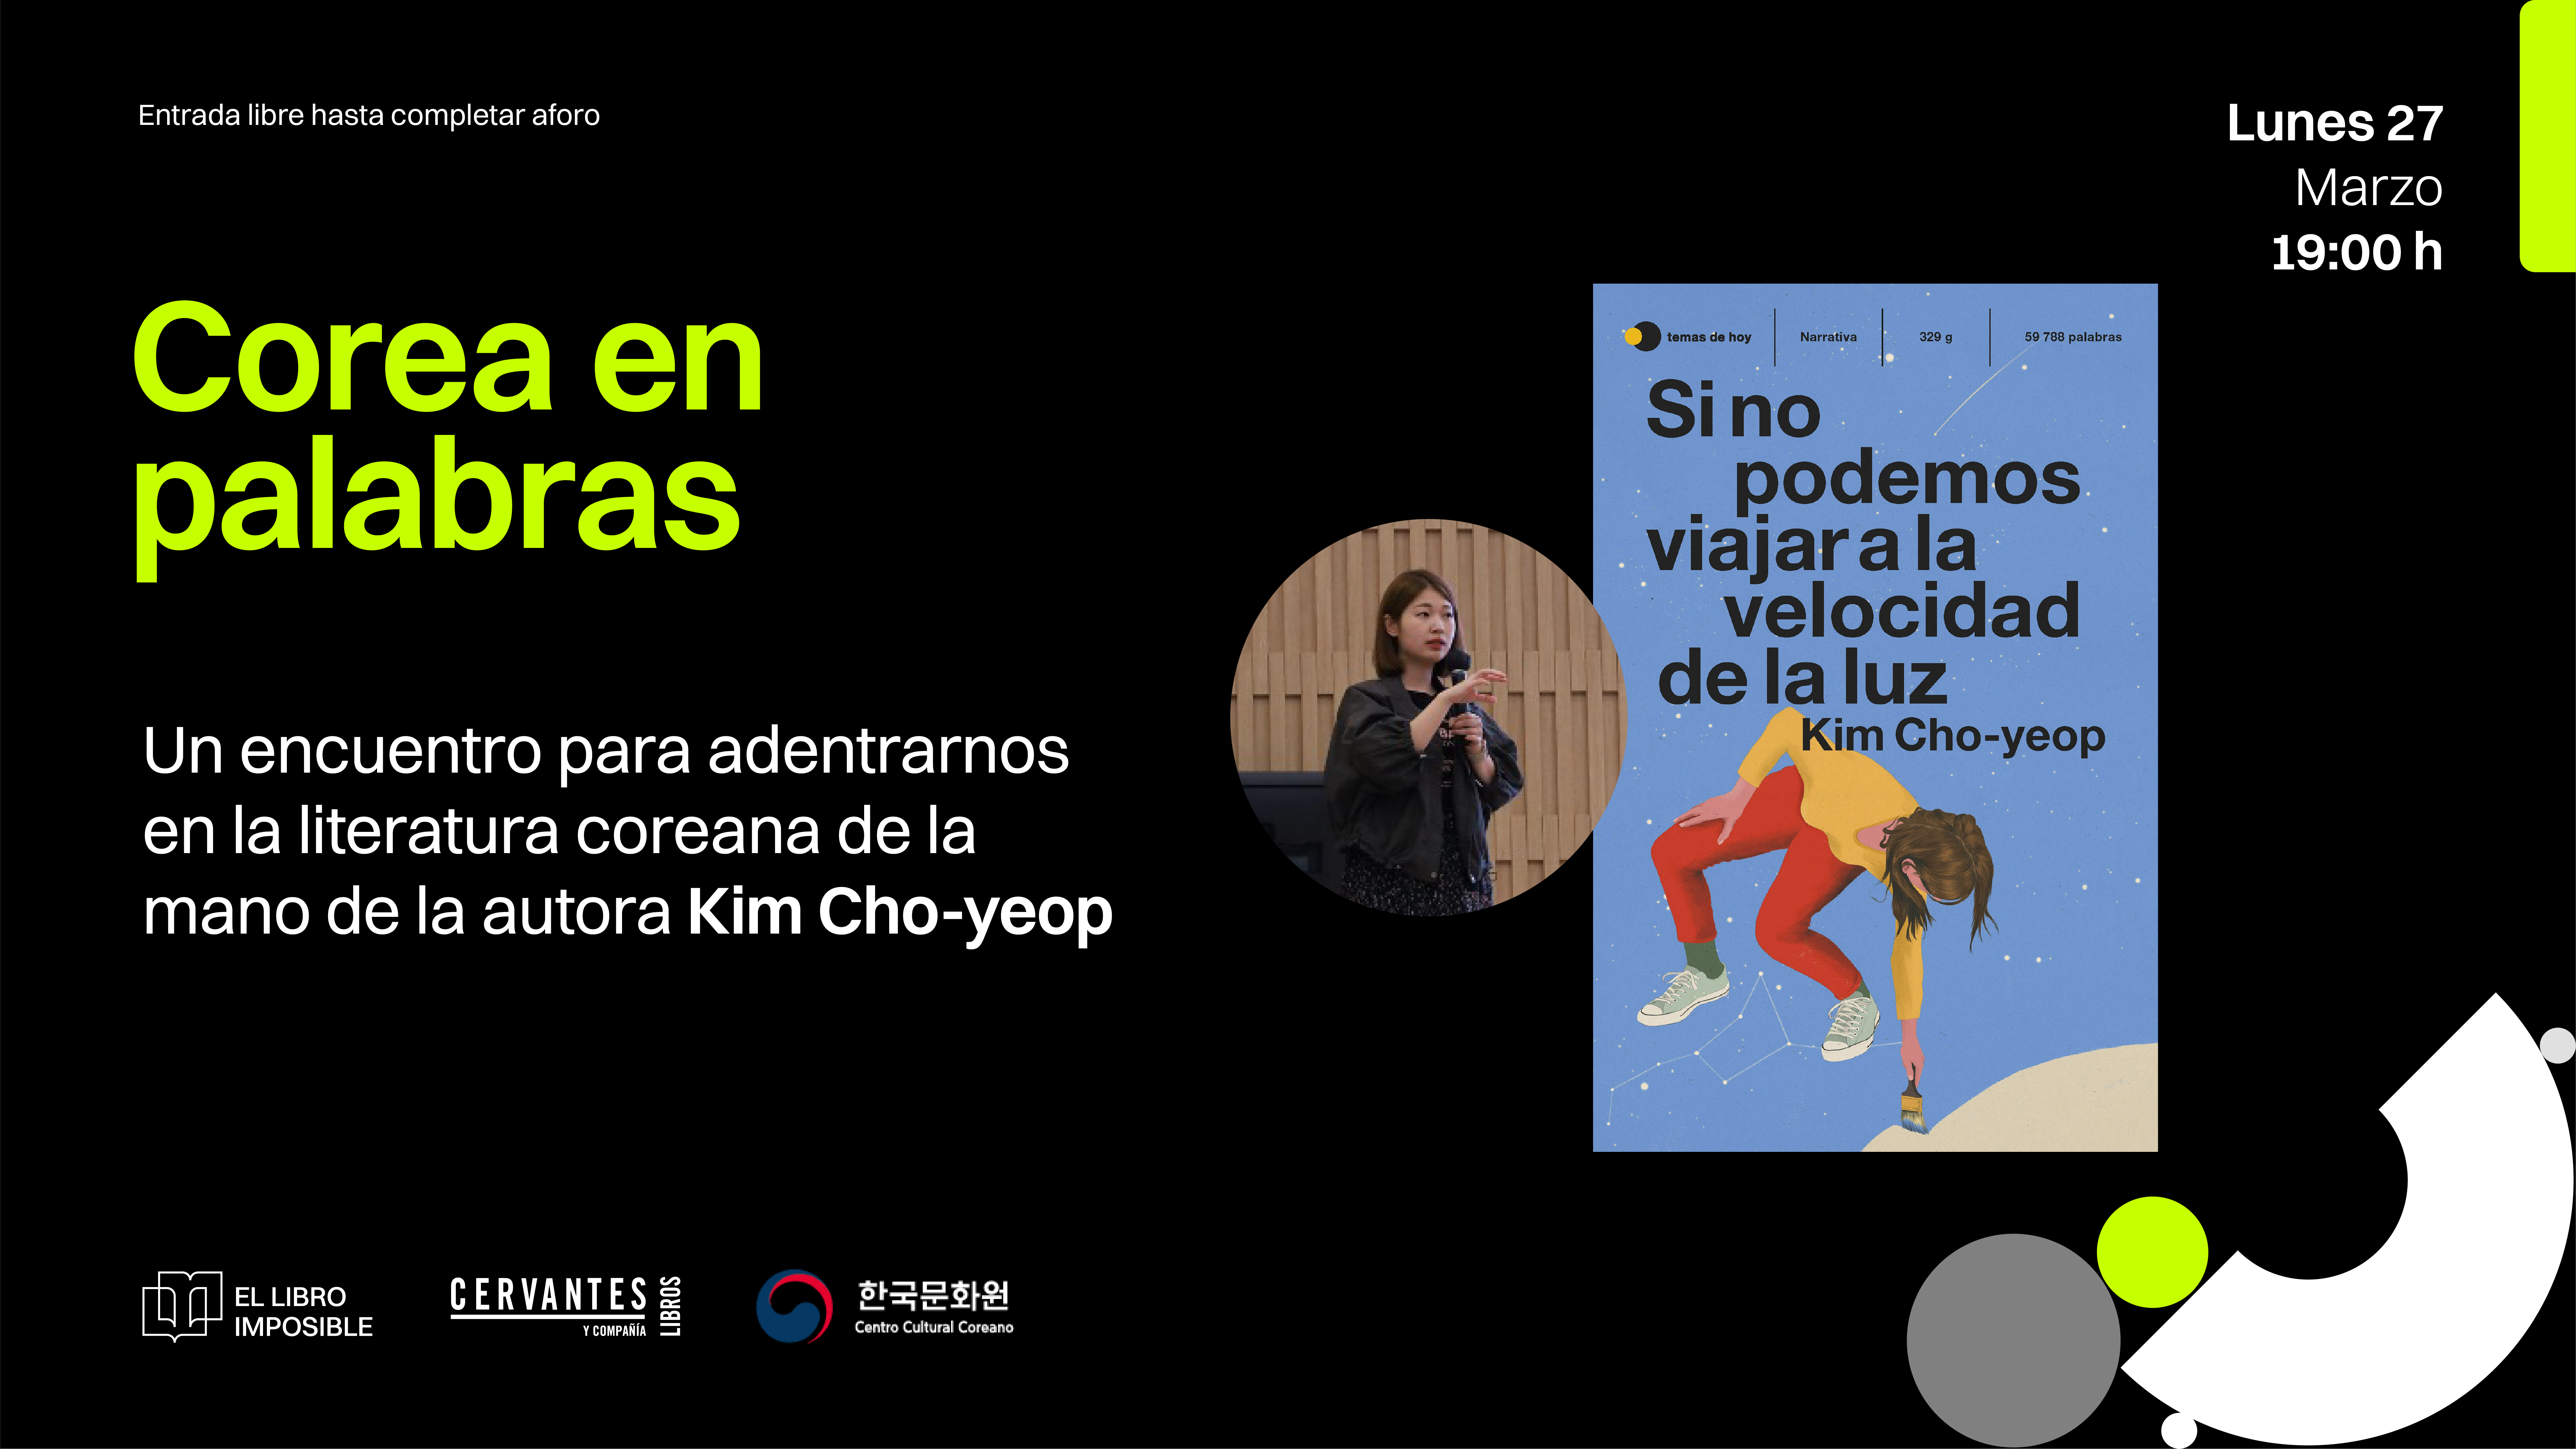 Kim Cho-yeop protagoniza el encuentro 'Corea en palabras' en El libro imposible el lunes 27 de marzo 1